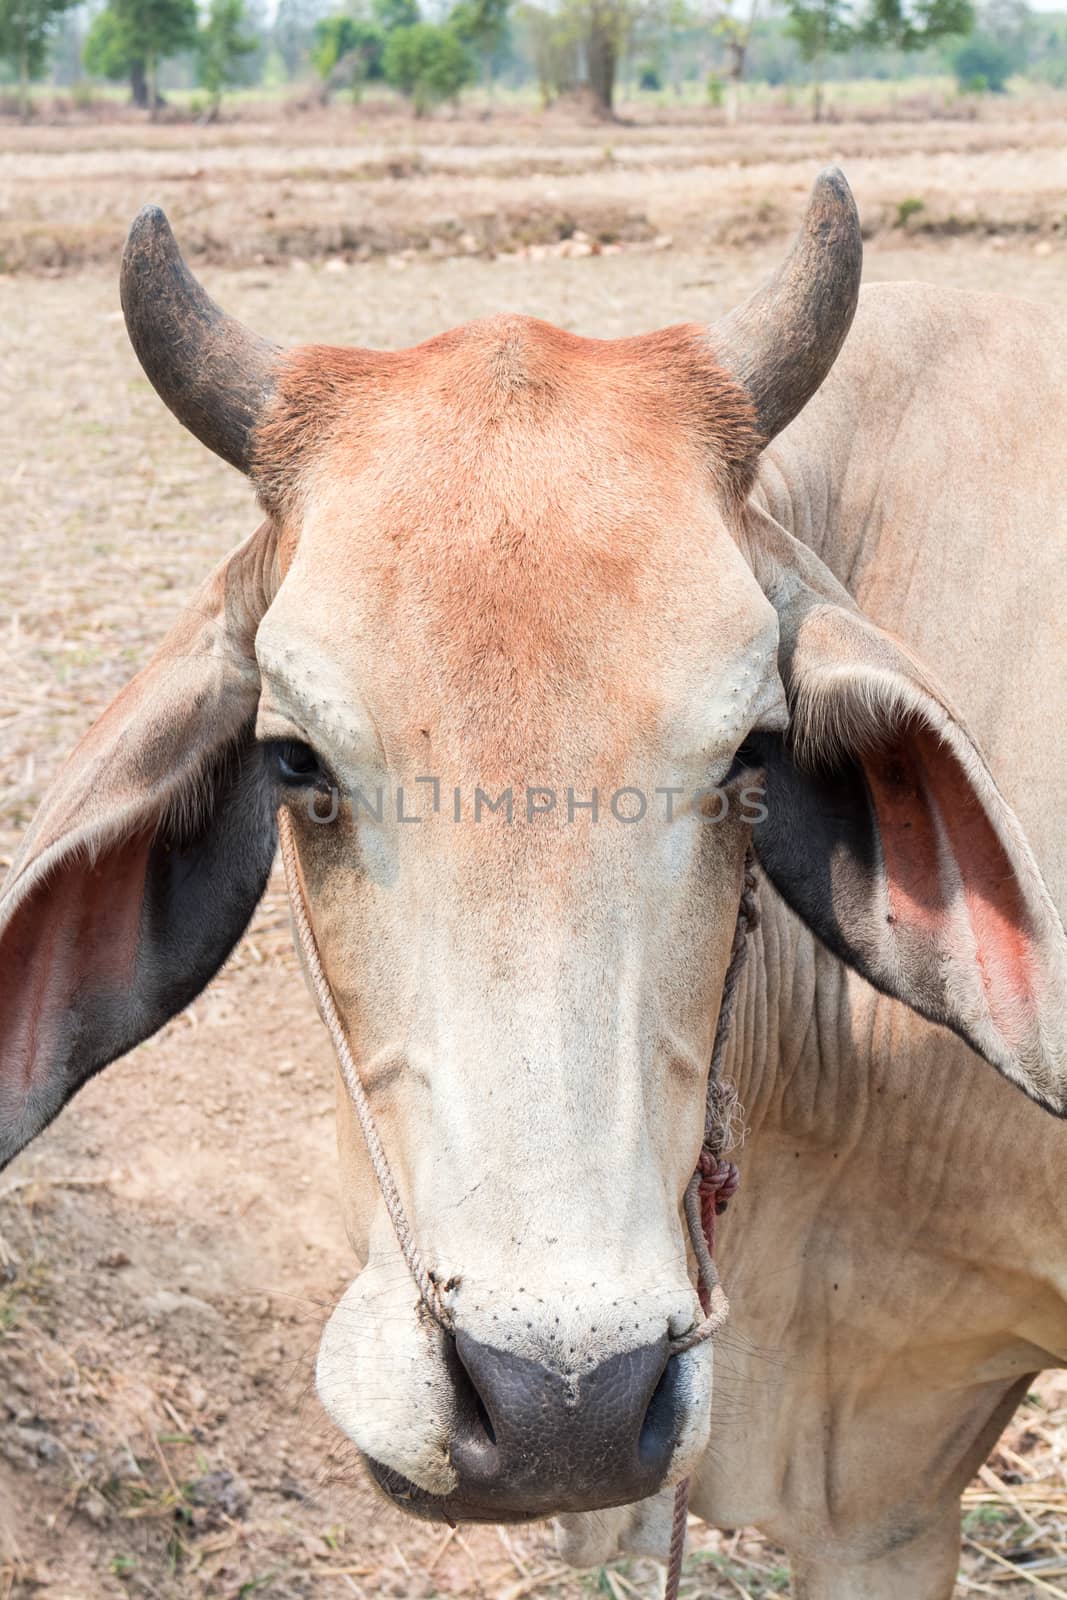 Closeup face cow